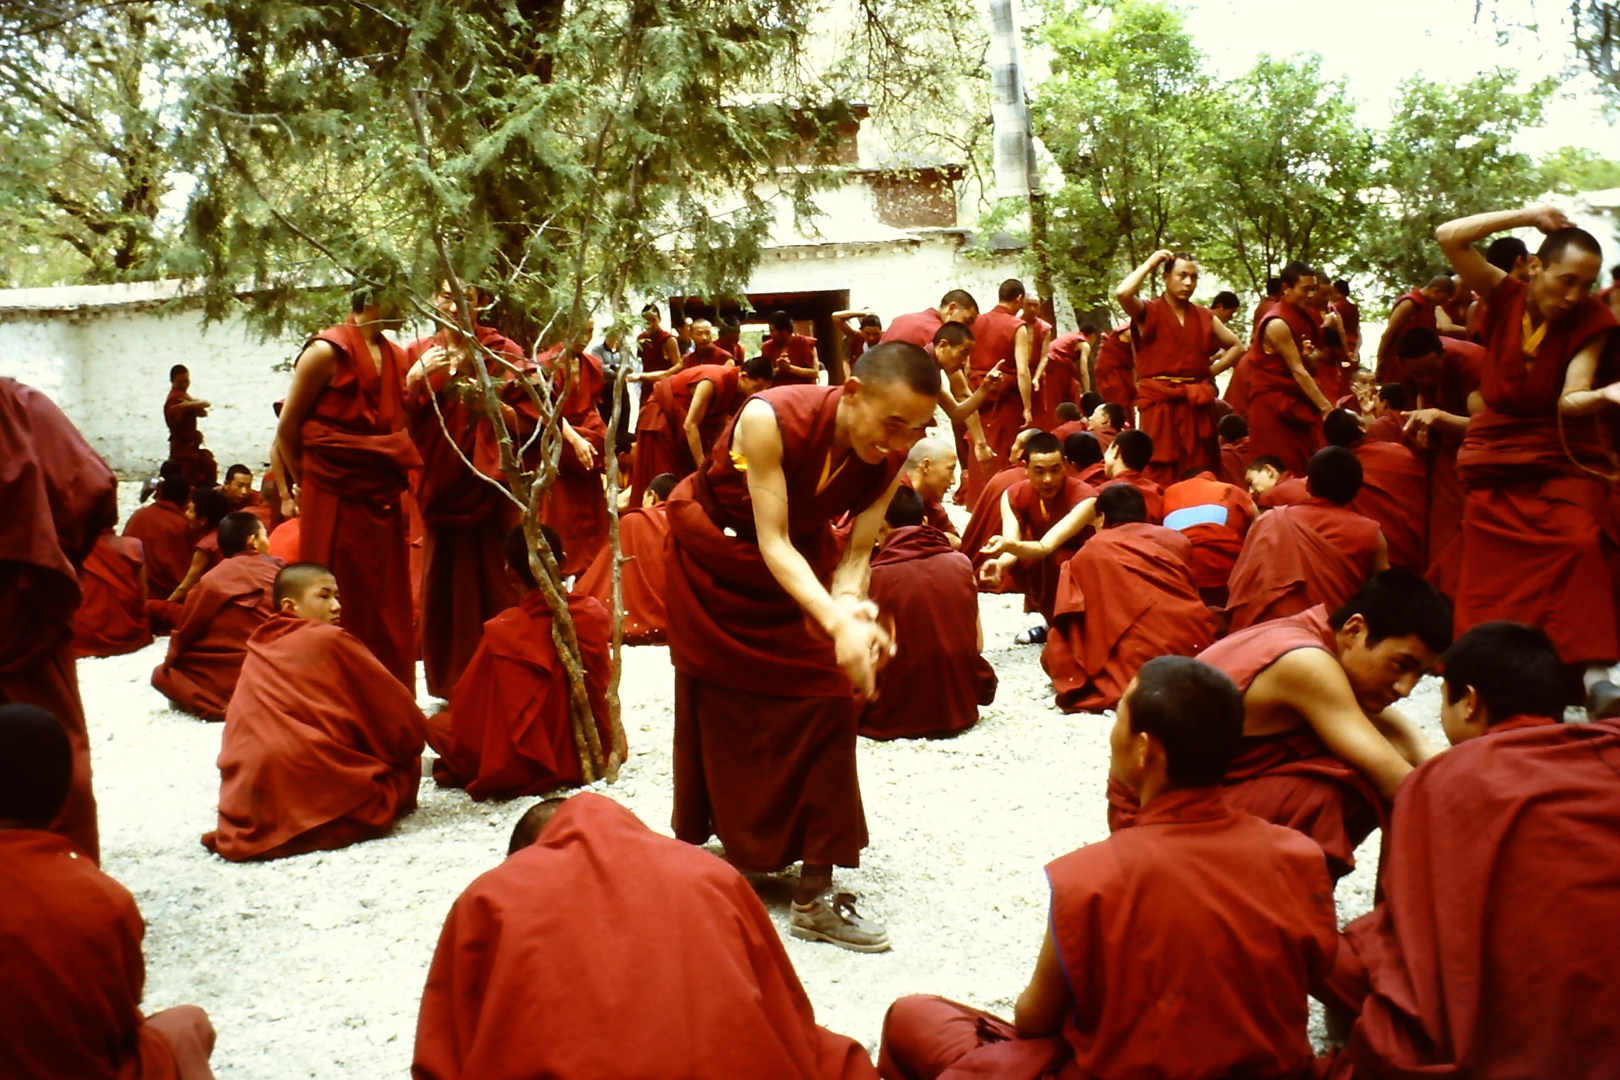 Mönche in Zentraltibet